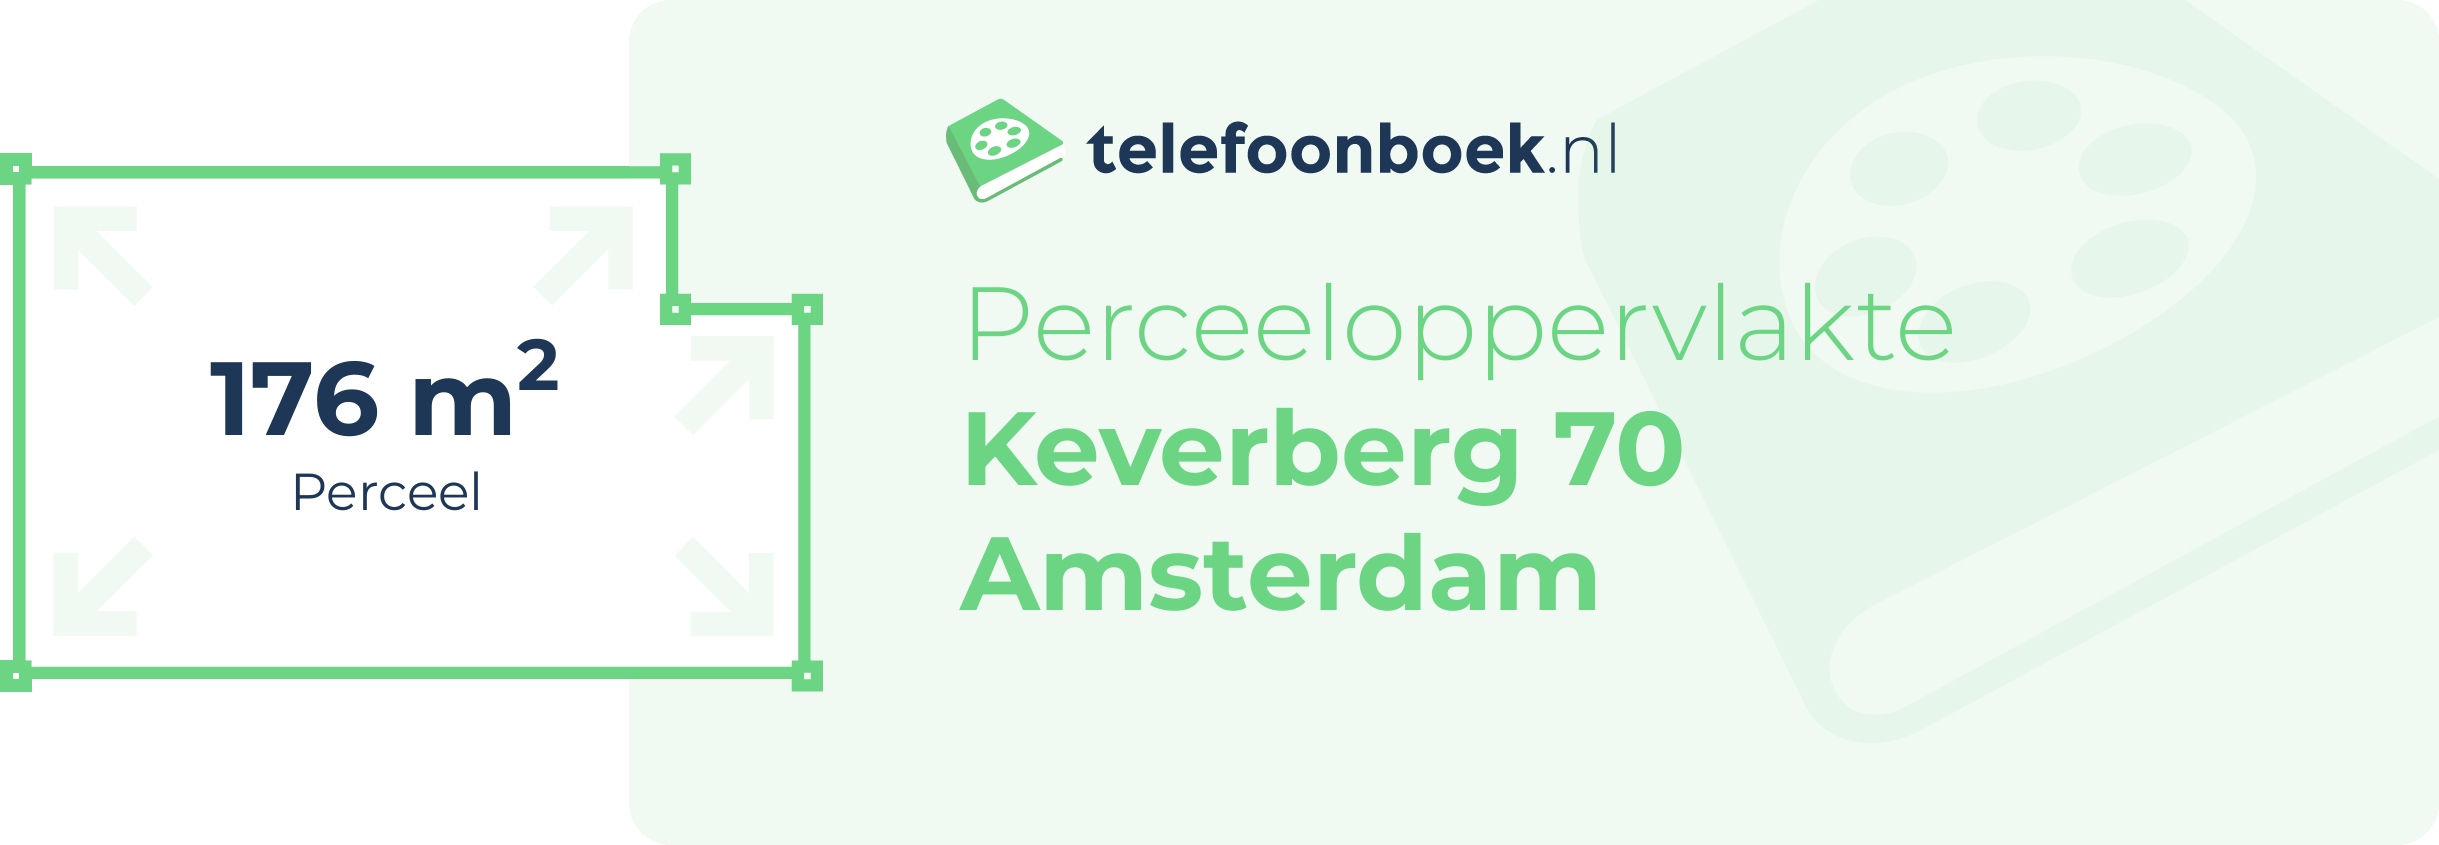 Perceeloppervlakte Keverberg 70 Amsterdam